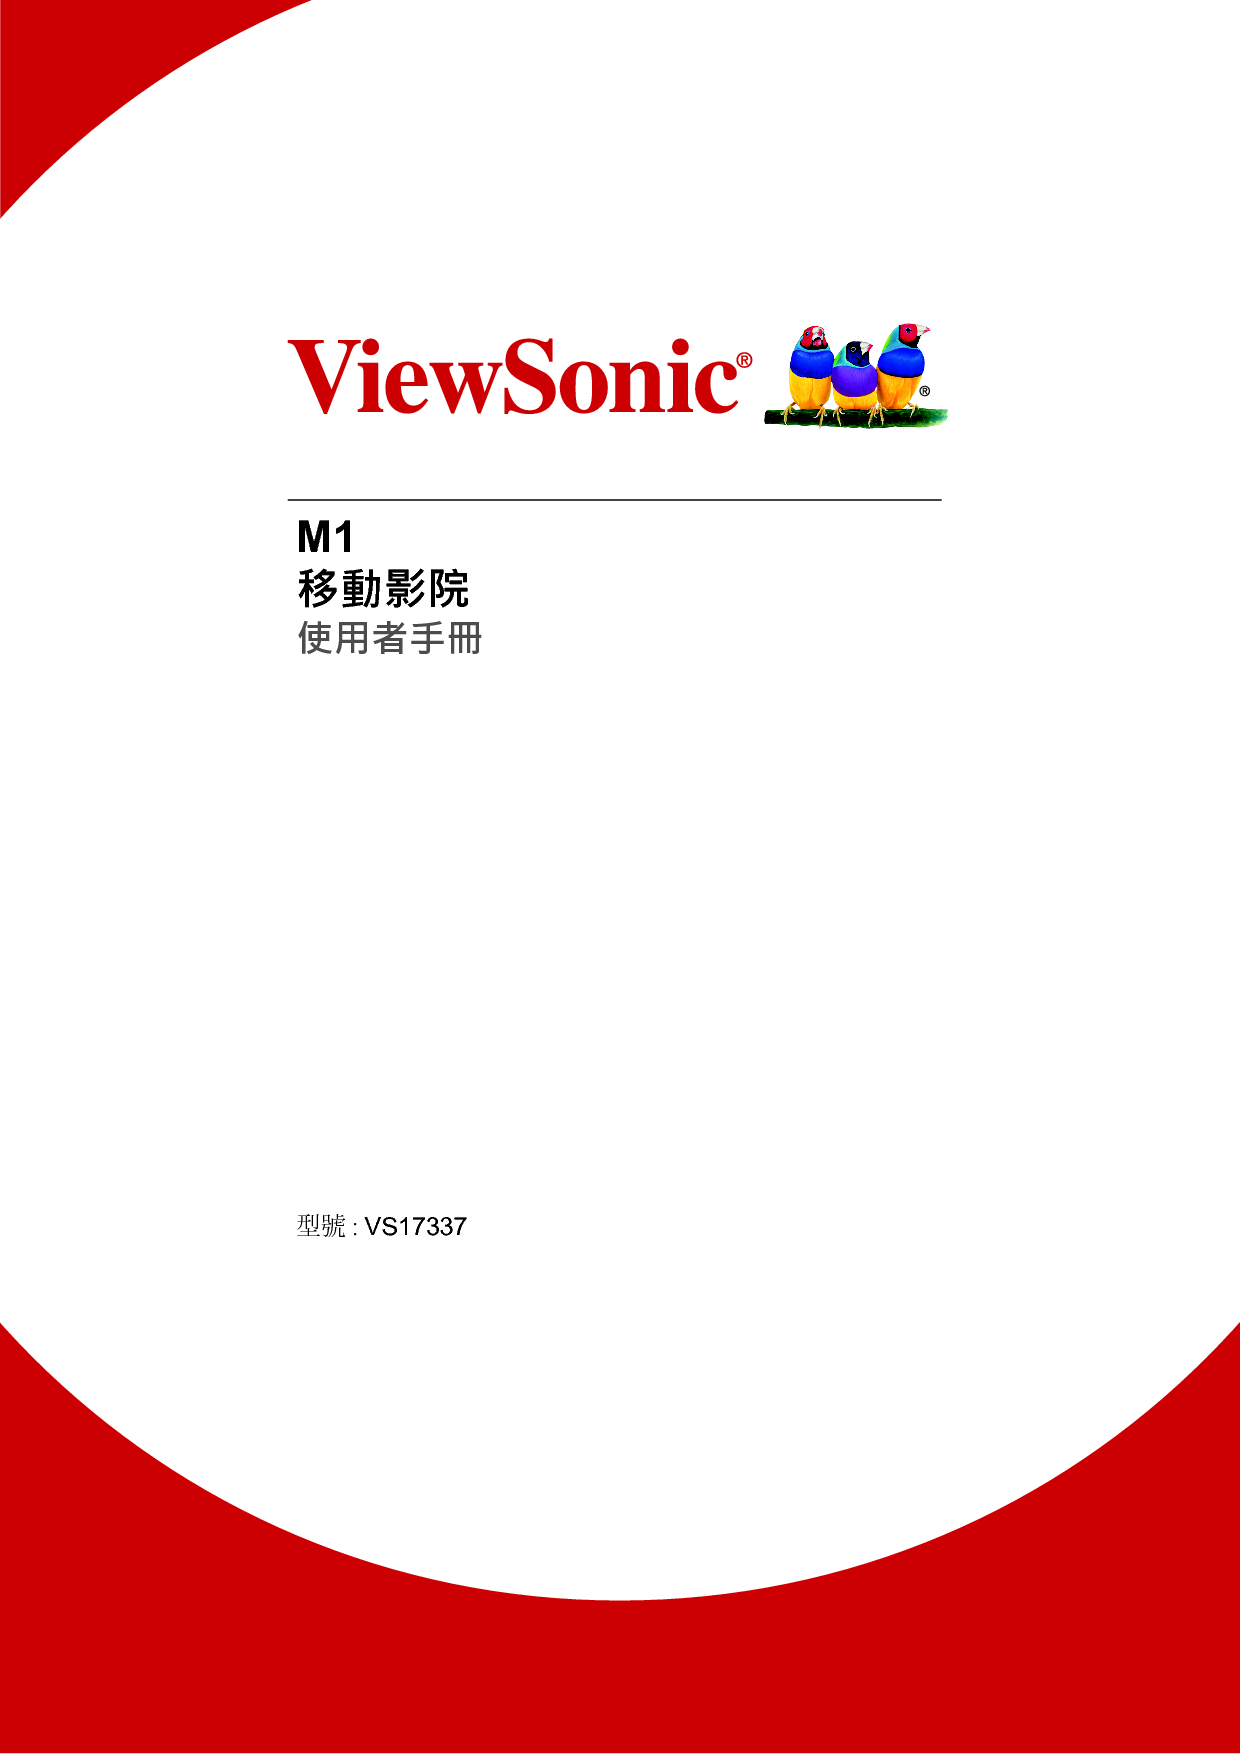 优派 ViewSonic M1 繁体使用说明书 封面